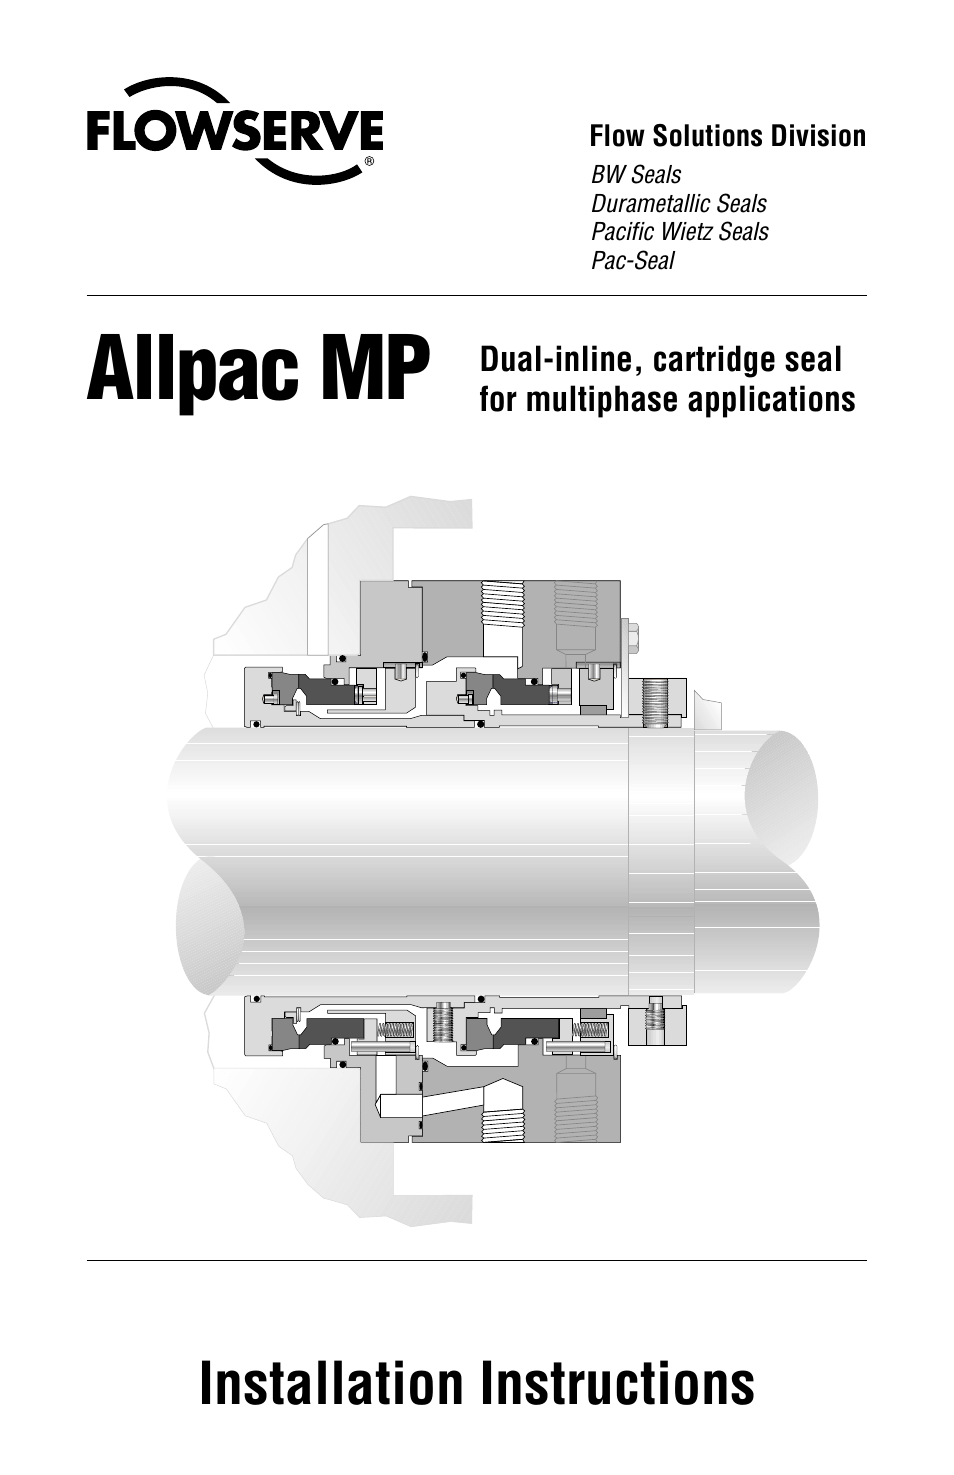 Allpac MP